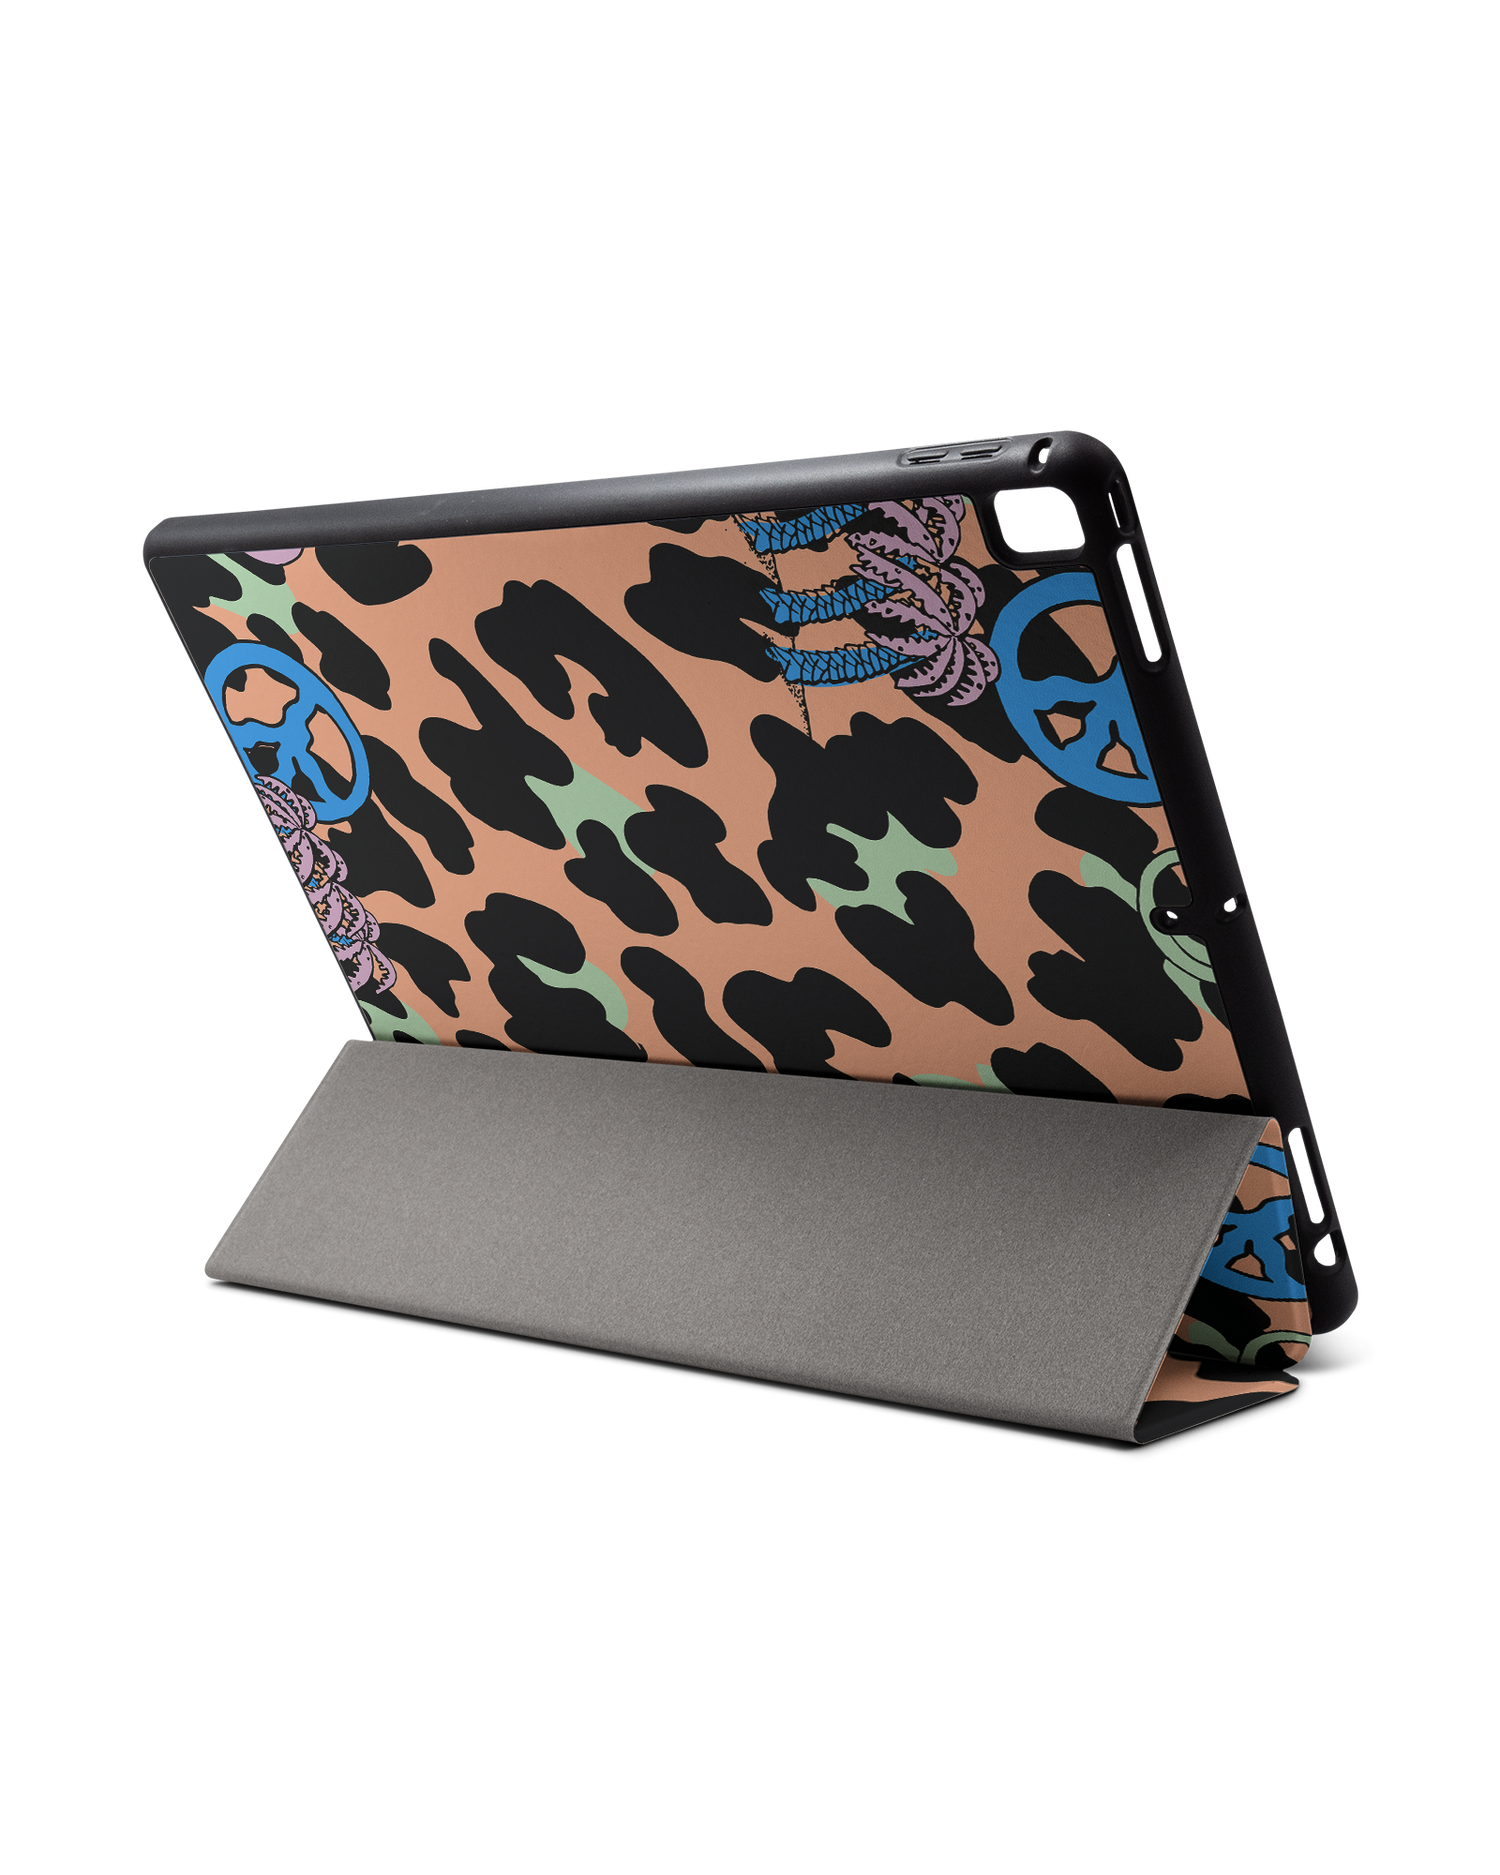 Leopard Peace Palms iPad Hülle mit Stifthalter für Apple iPad Pro 2 12.9'' (2017): Aufgestellt im Querformat von hinten